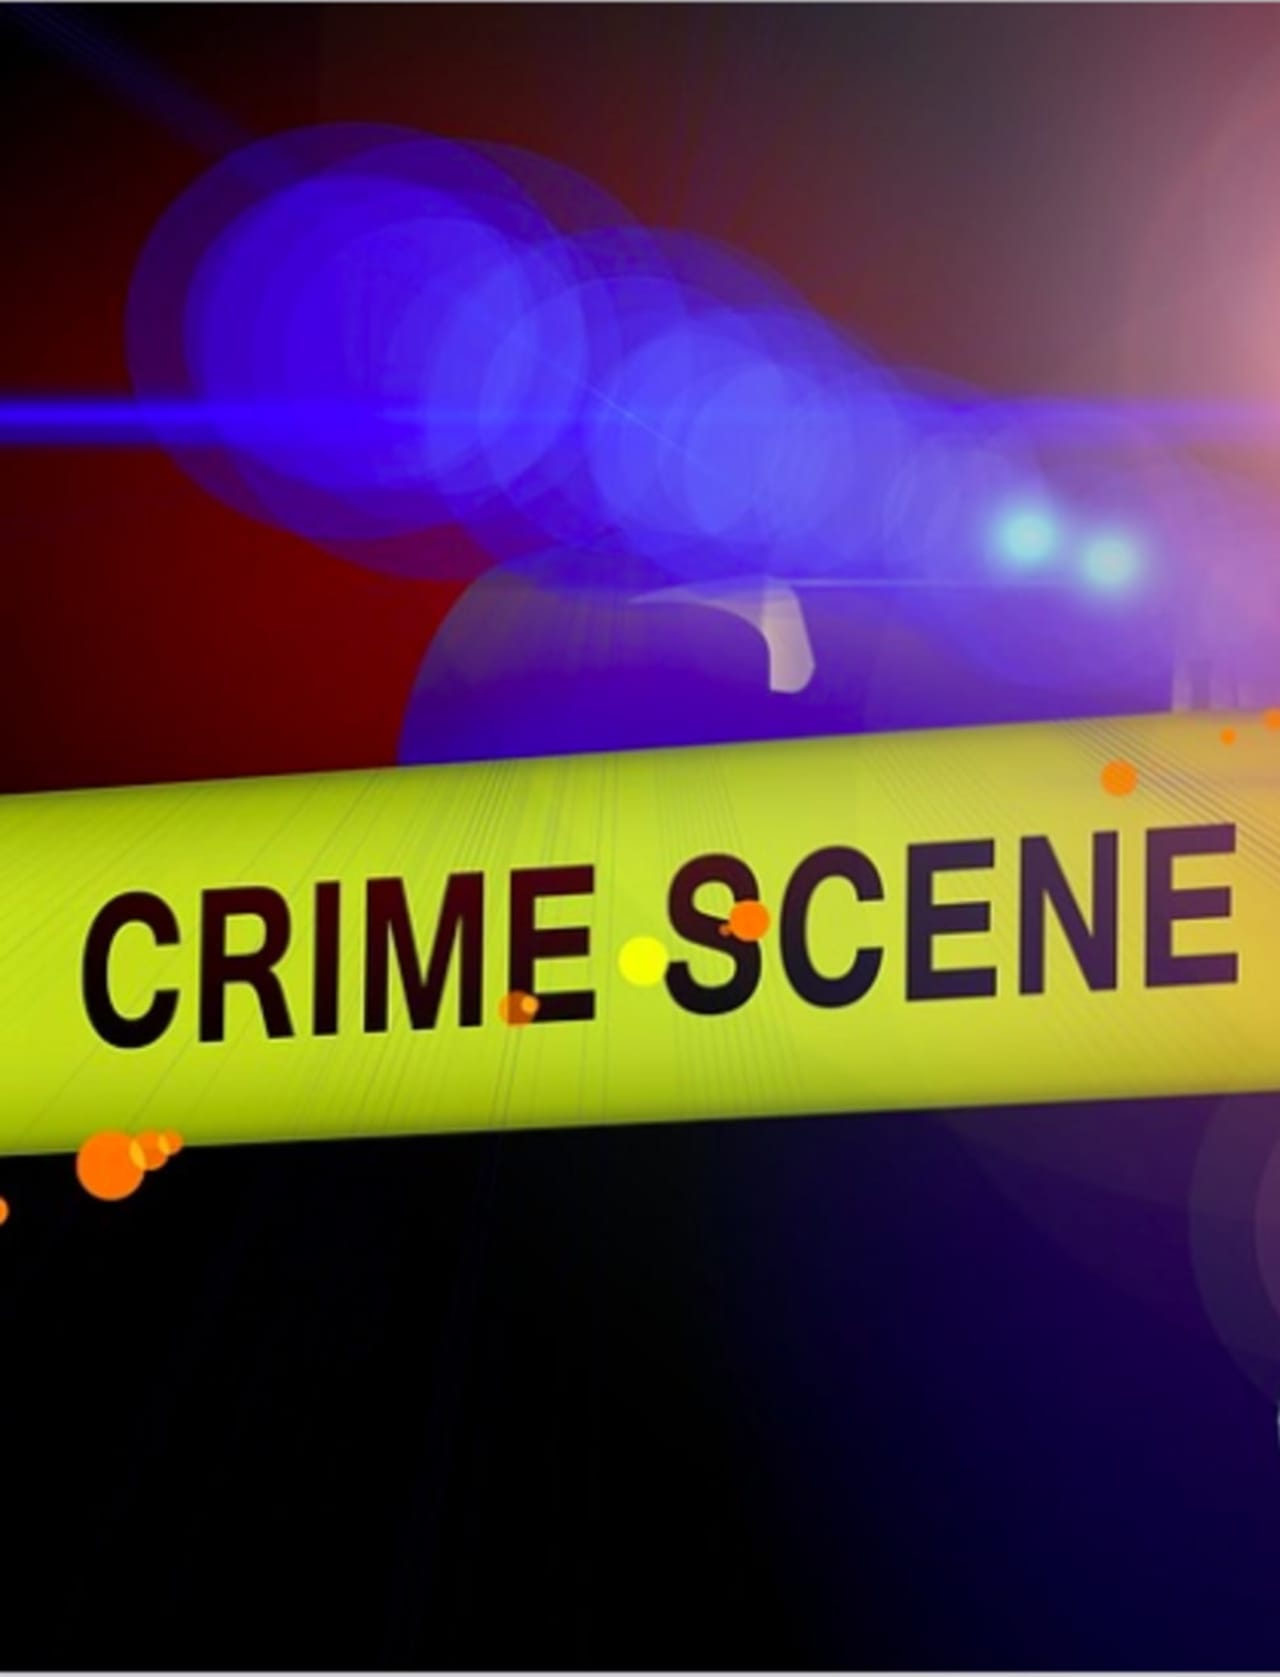 A man was found shot to death in Bridgeport.